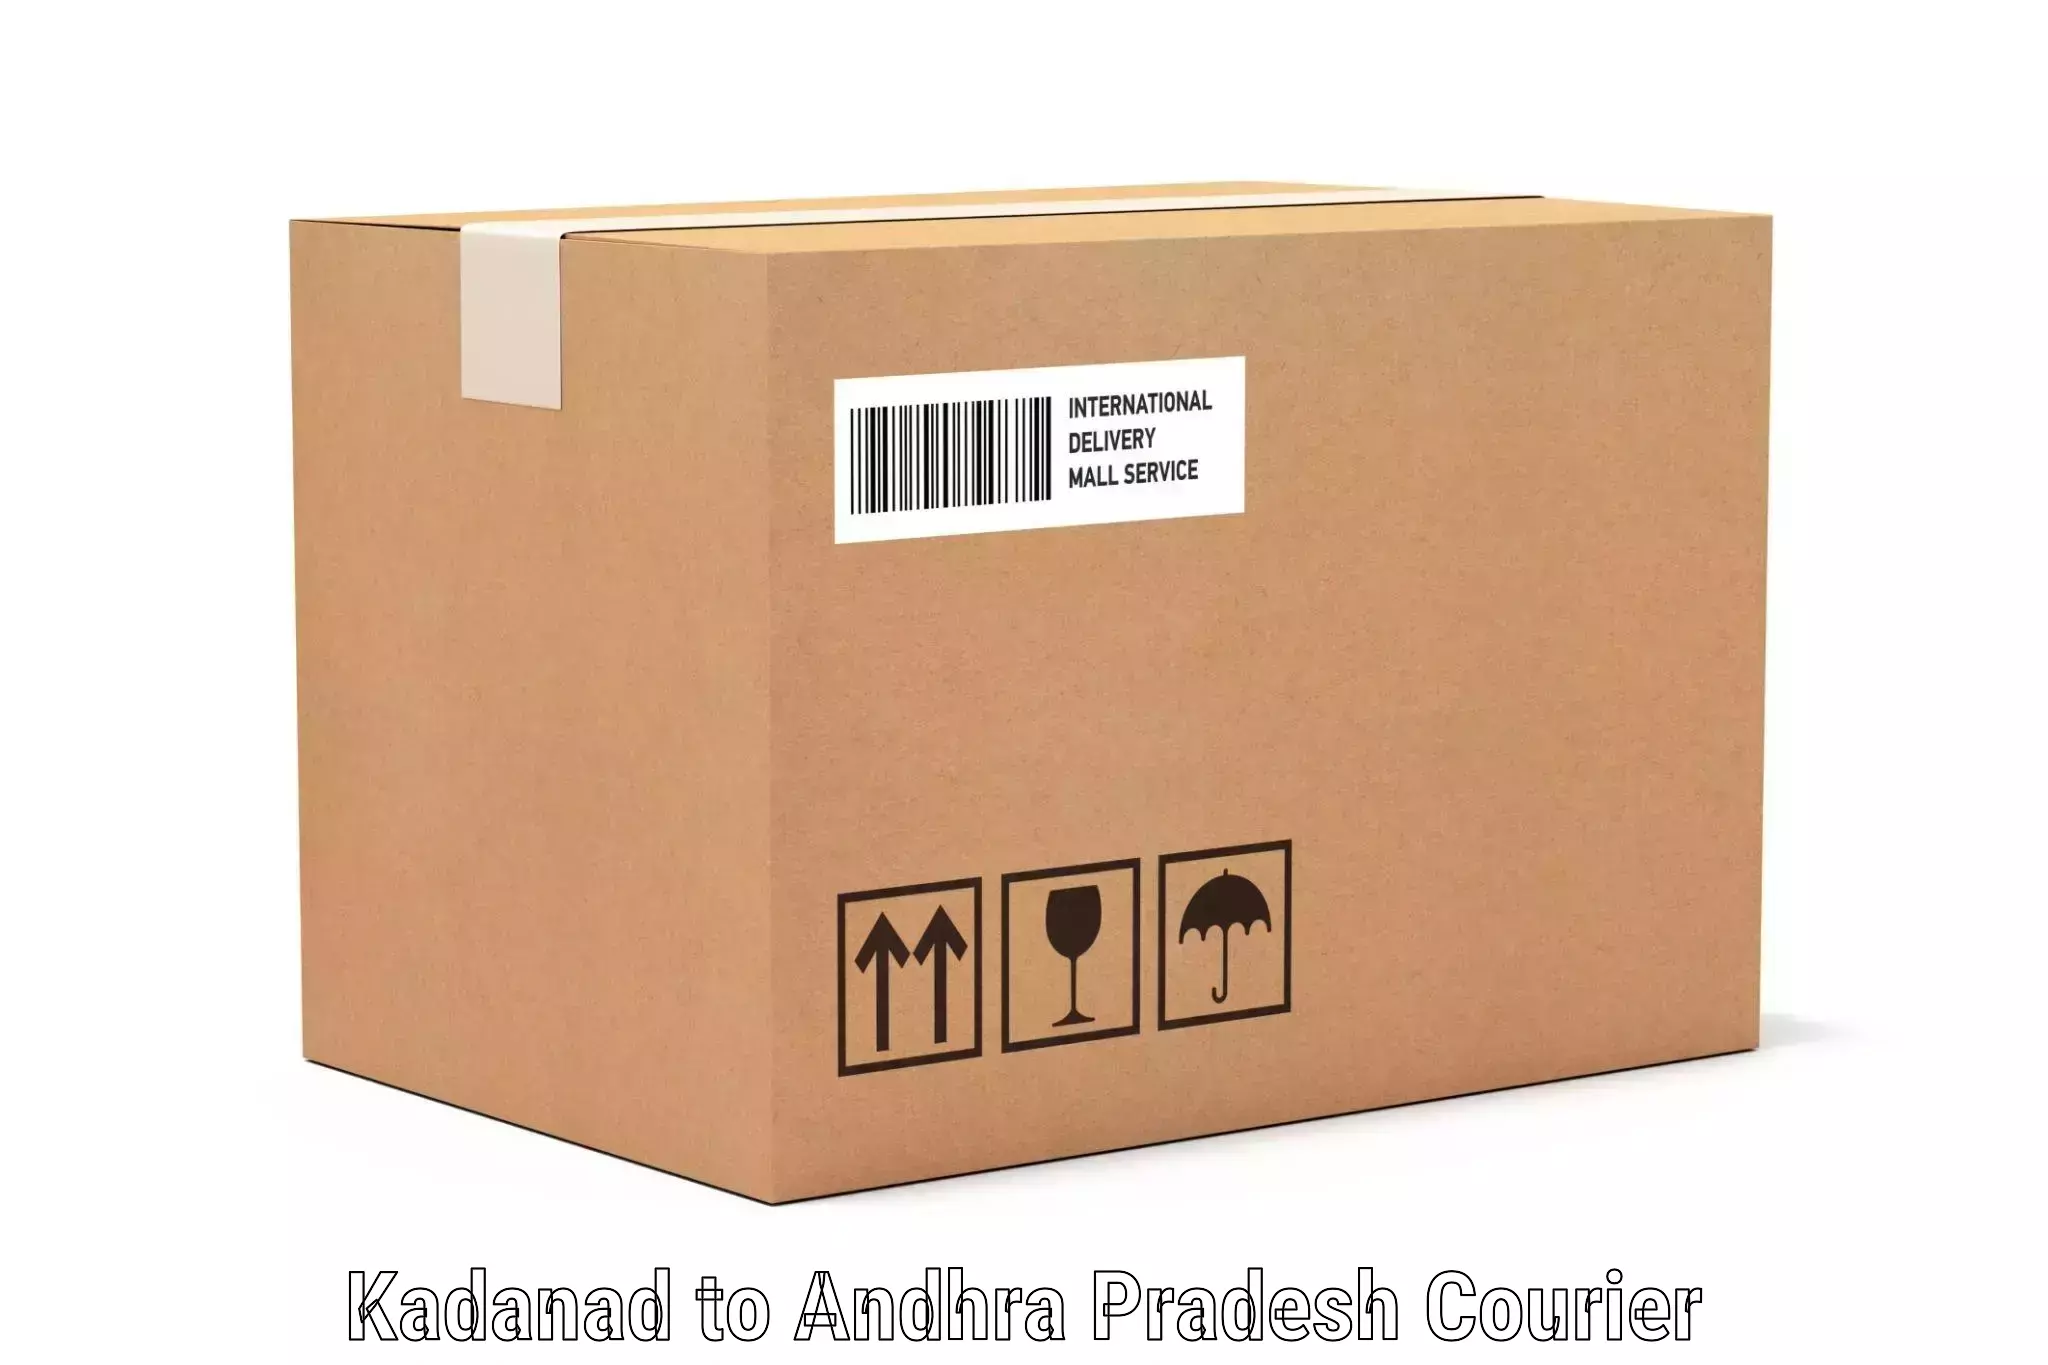 Luggage delivery system Kadanad to Macherla